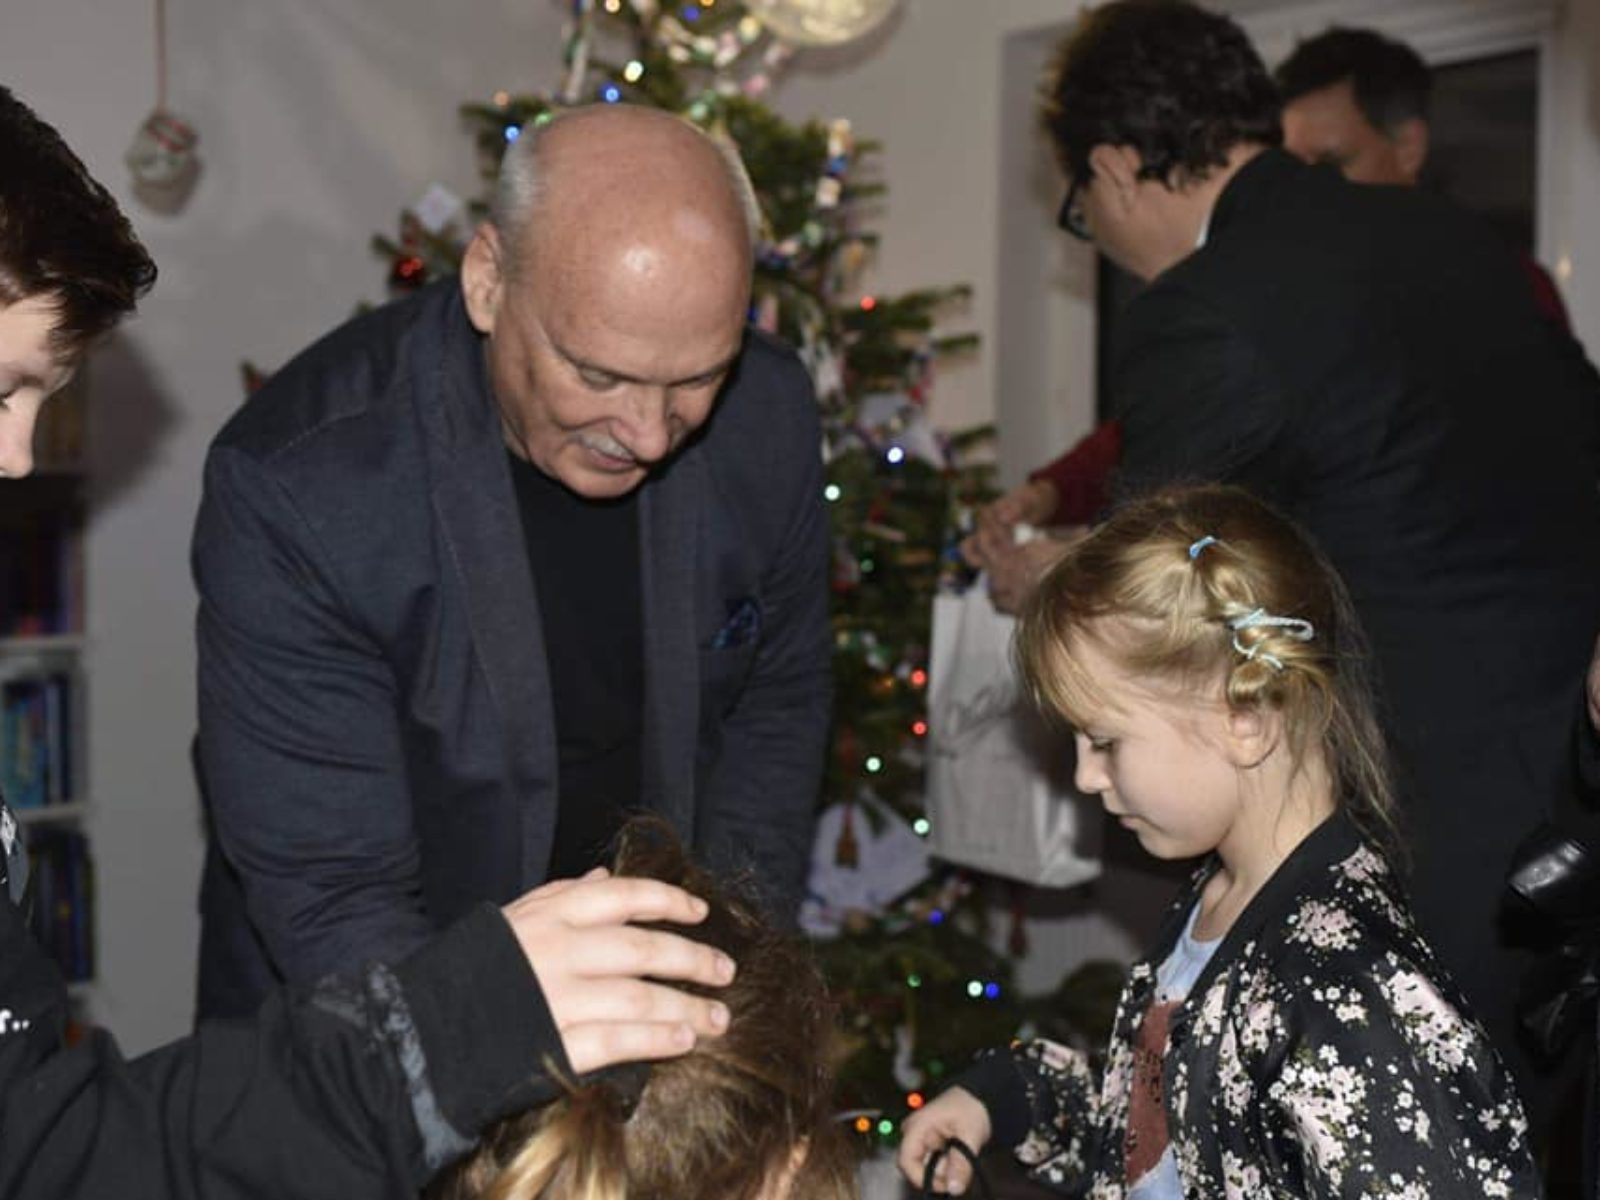 Burmistrz Dzielnicy Praga-Południe oraz Dyrektor Fabryki E.Wedel odwiedzili dzieci z Domu Fundacji